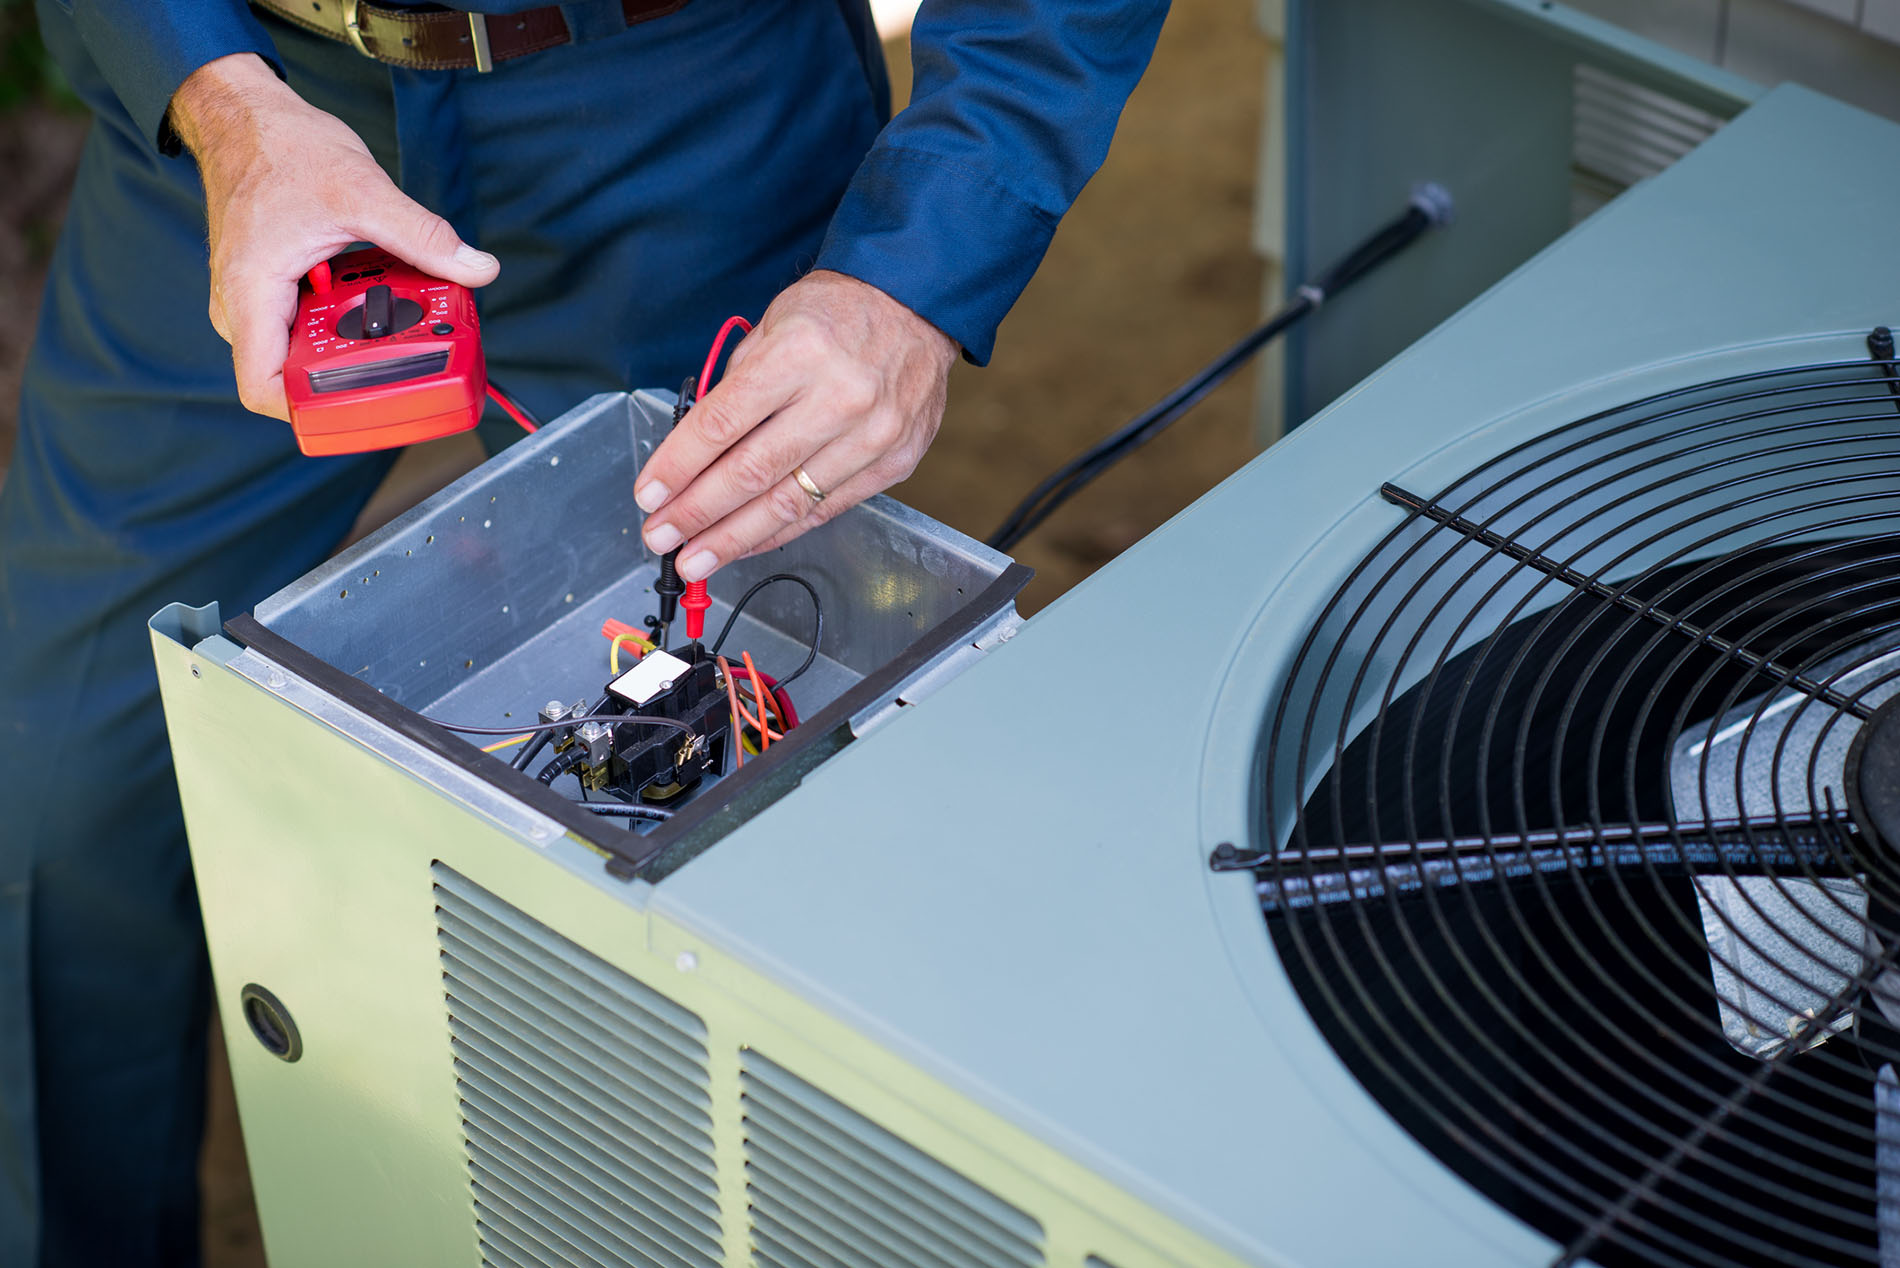 BlueSky Cooling Comfort: AC Repair Service near Ocala & Dunnellon FL